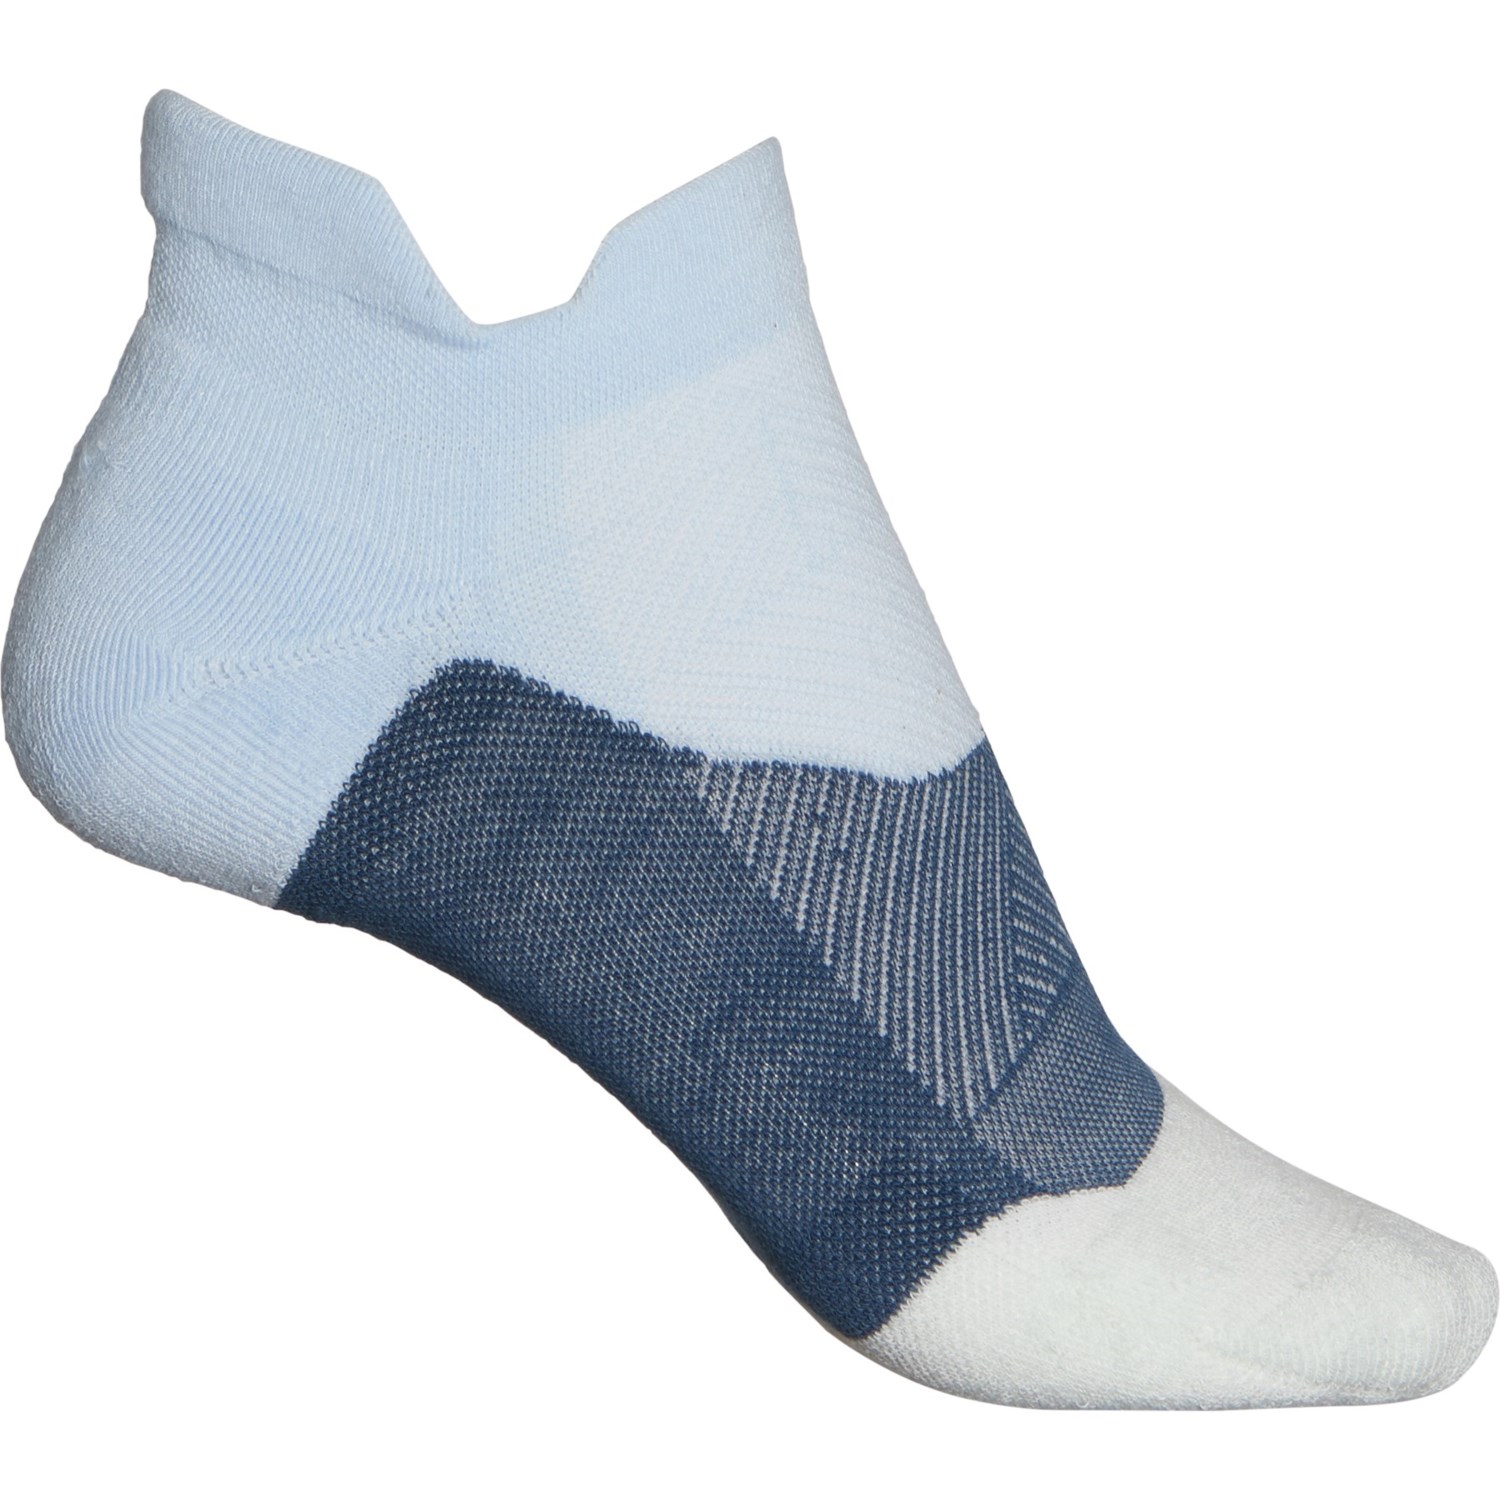 Feetures Elite Max Cushion No-Show Tab Socks (For Women)